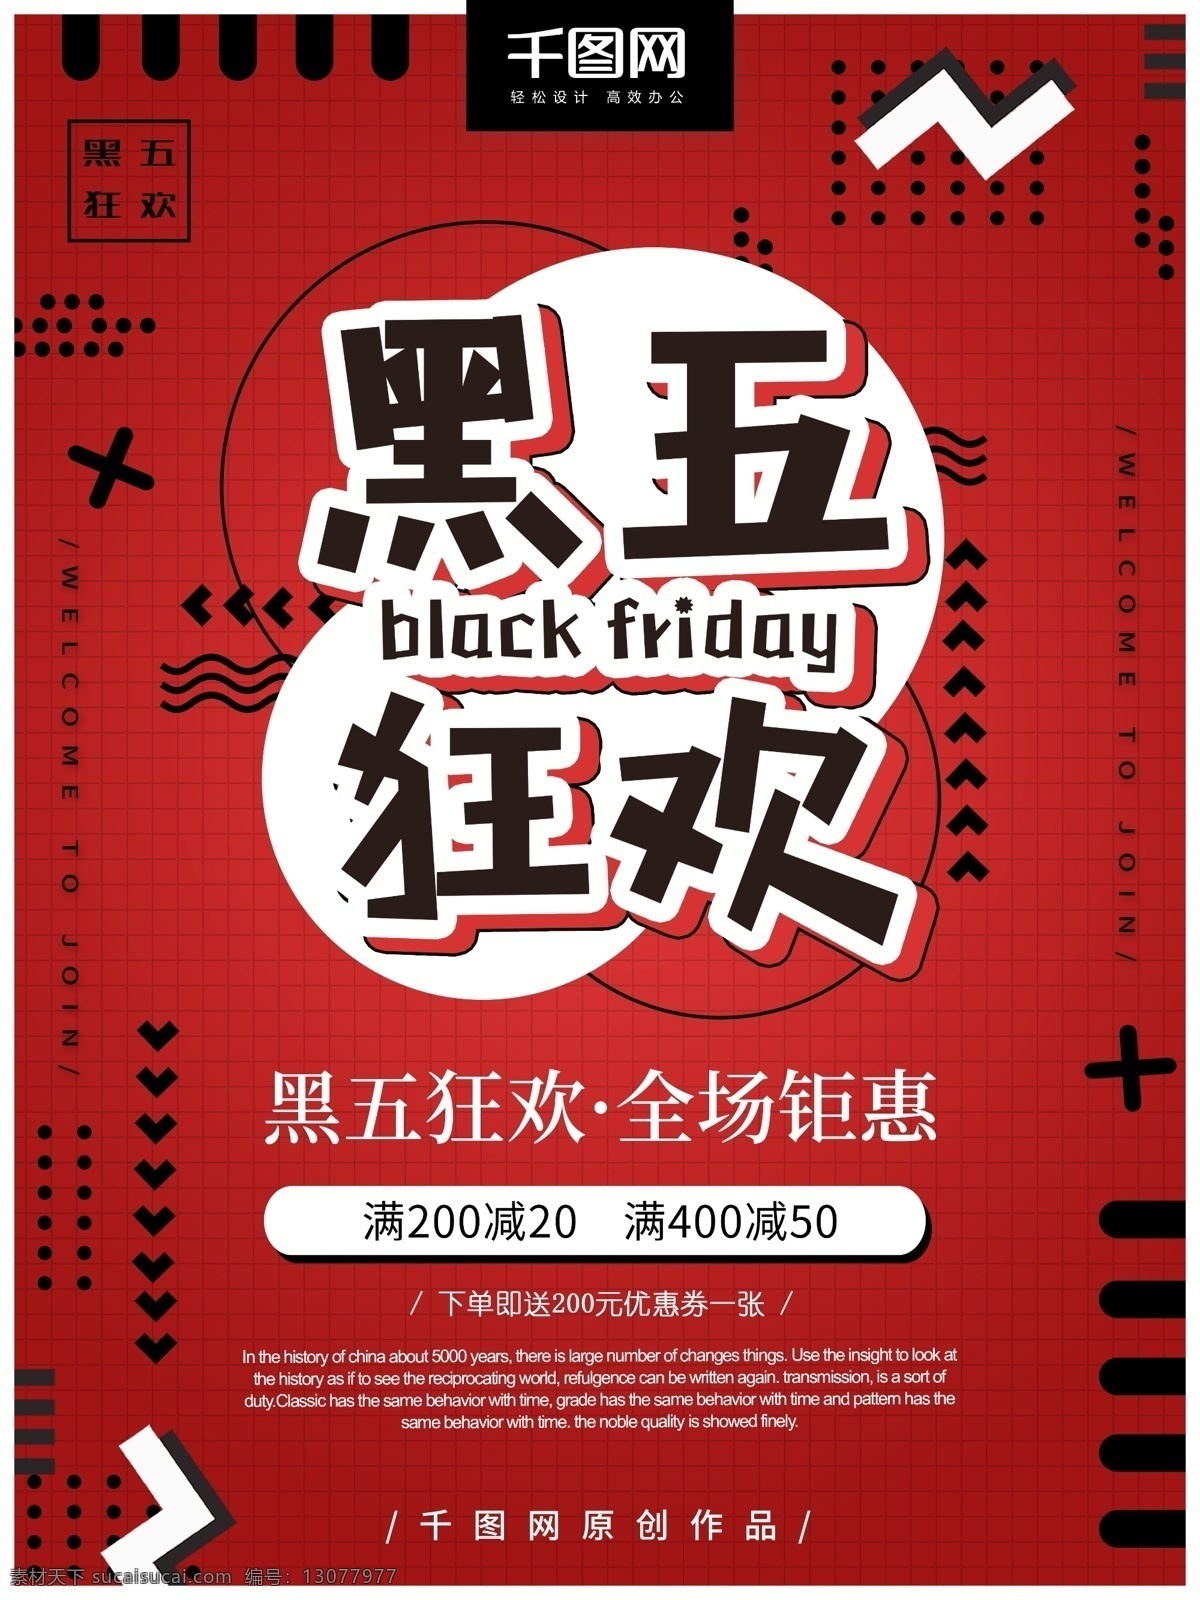 黑色 星期五 黑 五 狂欢 时尚 促销 海报 创意 几何 红色 黑五狂欢 黑色星期五 孟菲斯风格